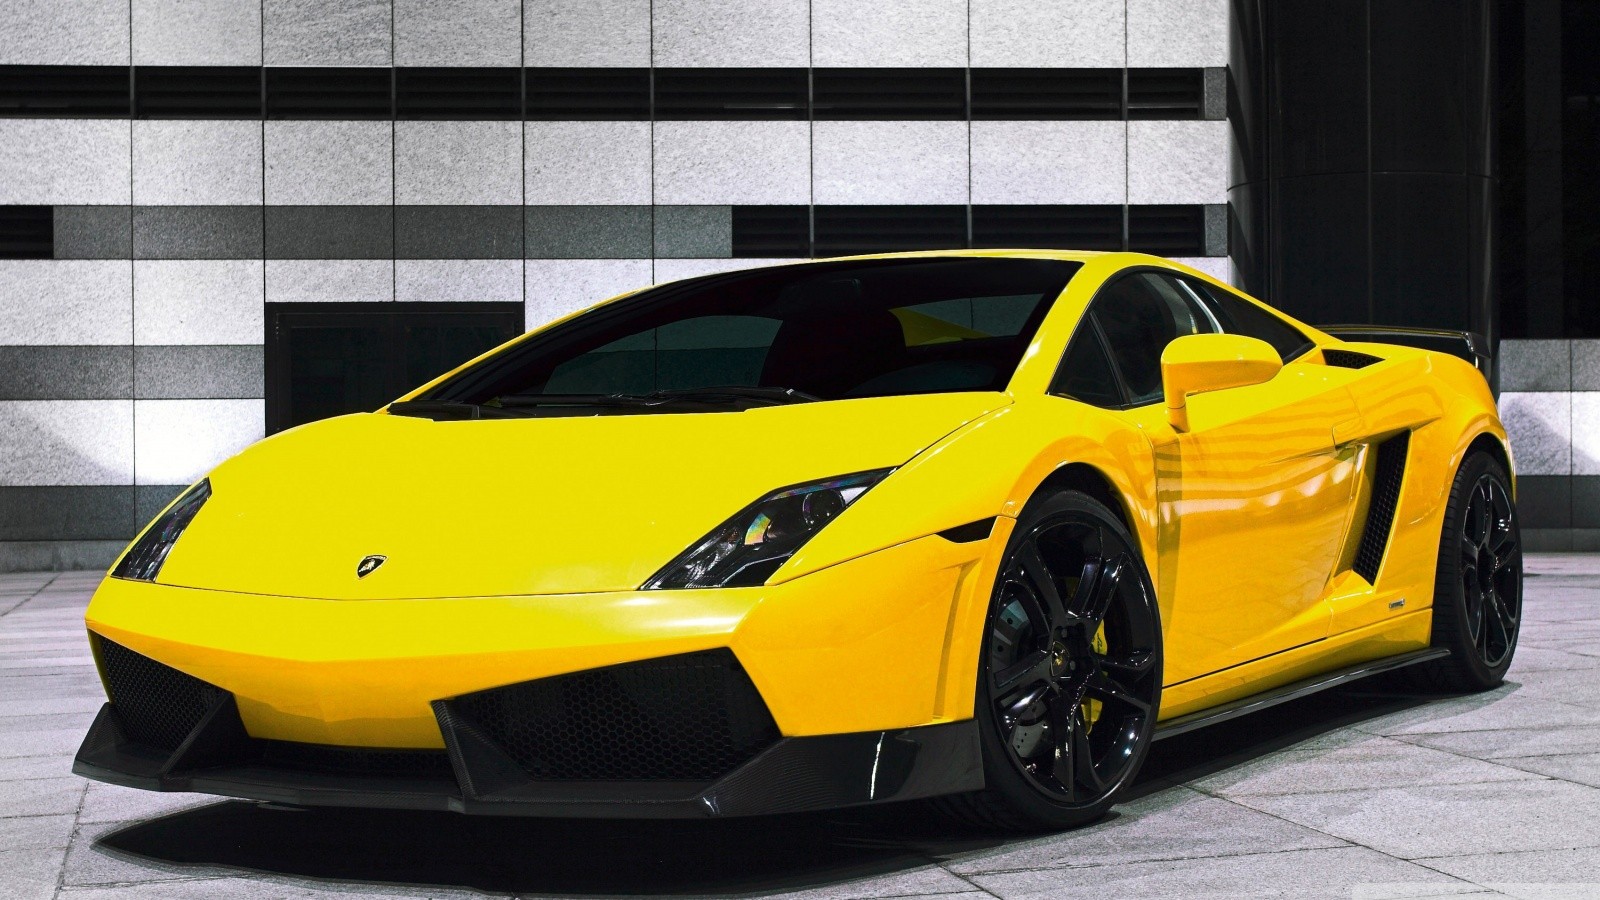 General 1600x900 car yellow cars Lamborghini Lamborghini Gallardo LP560-4 supercars Lamborghini Gallardo